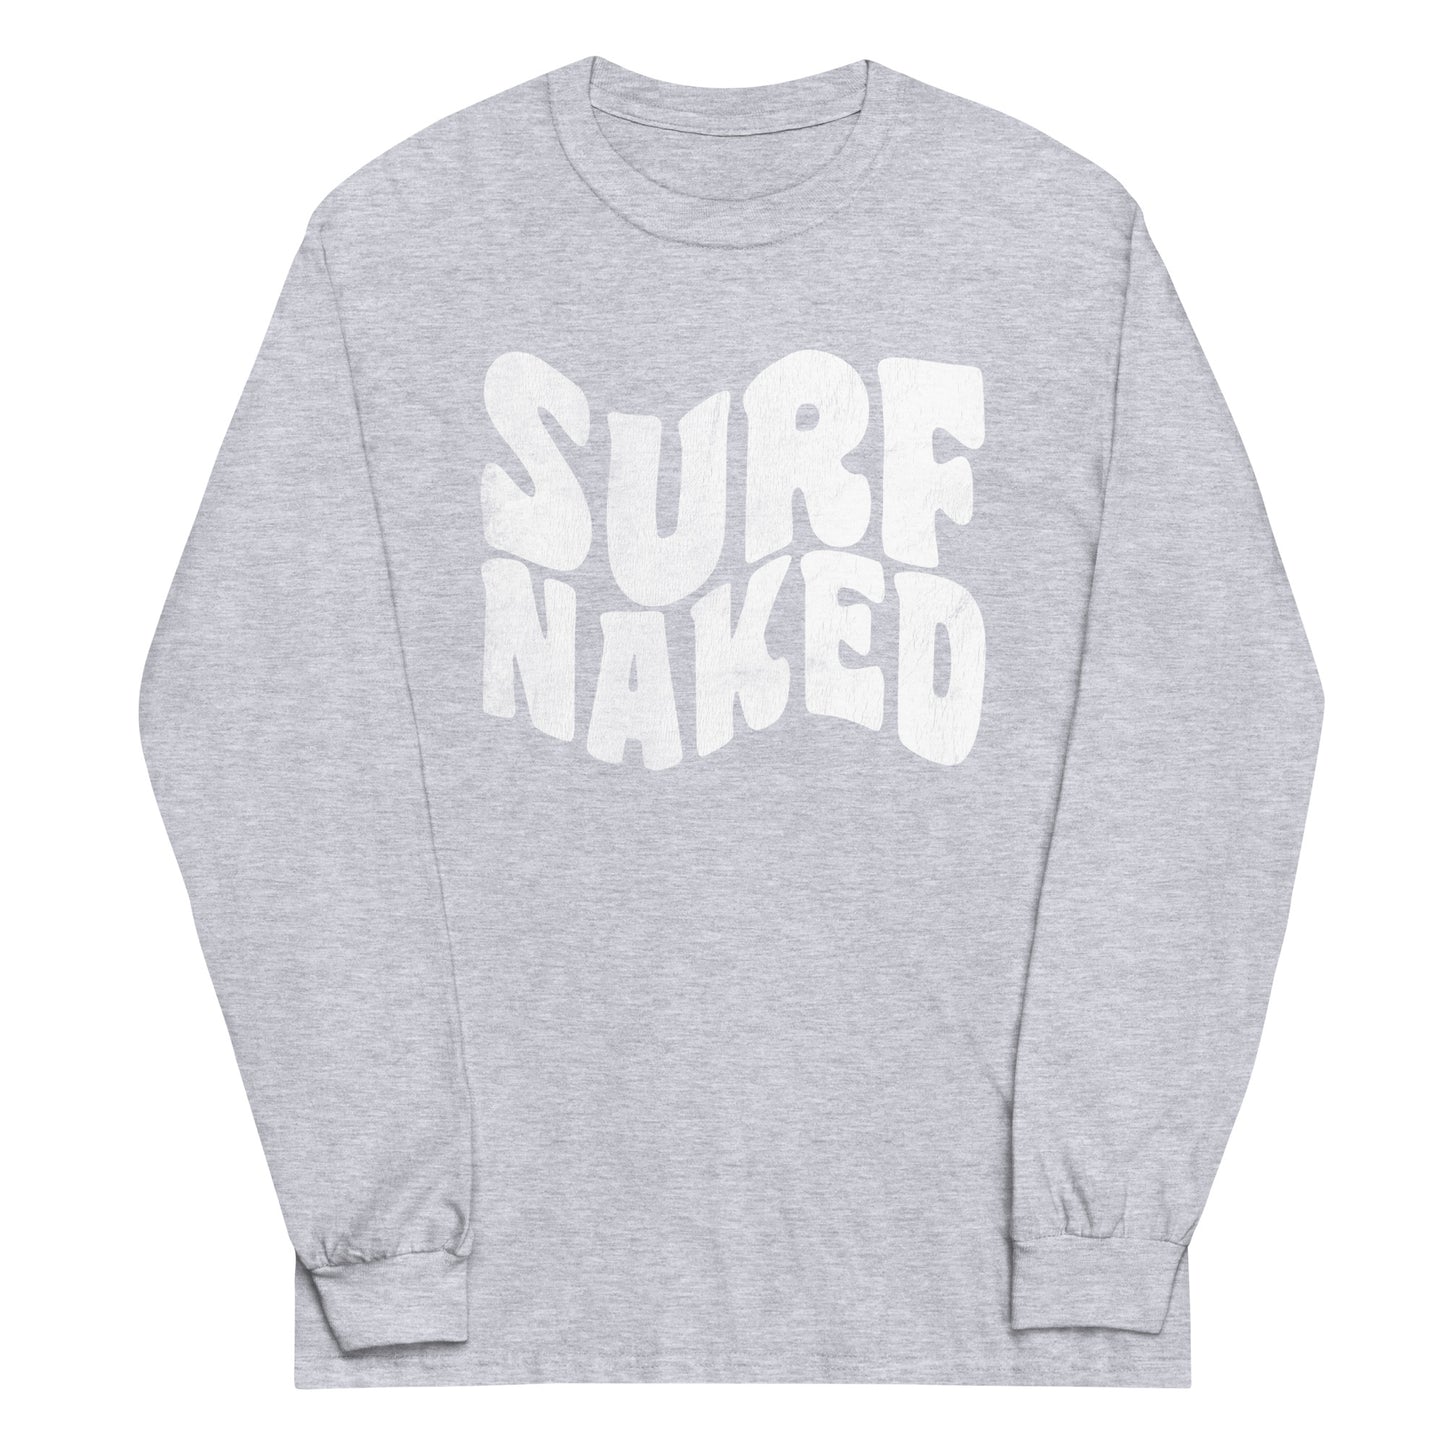 Retro Surf Naked Long Sleeve Shirt